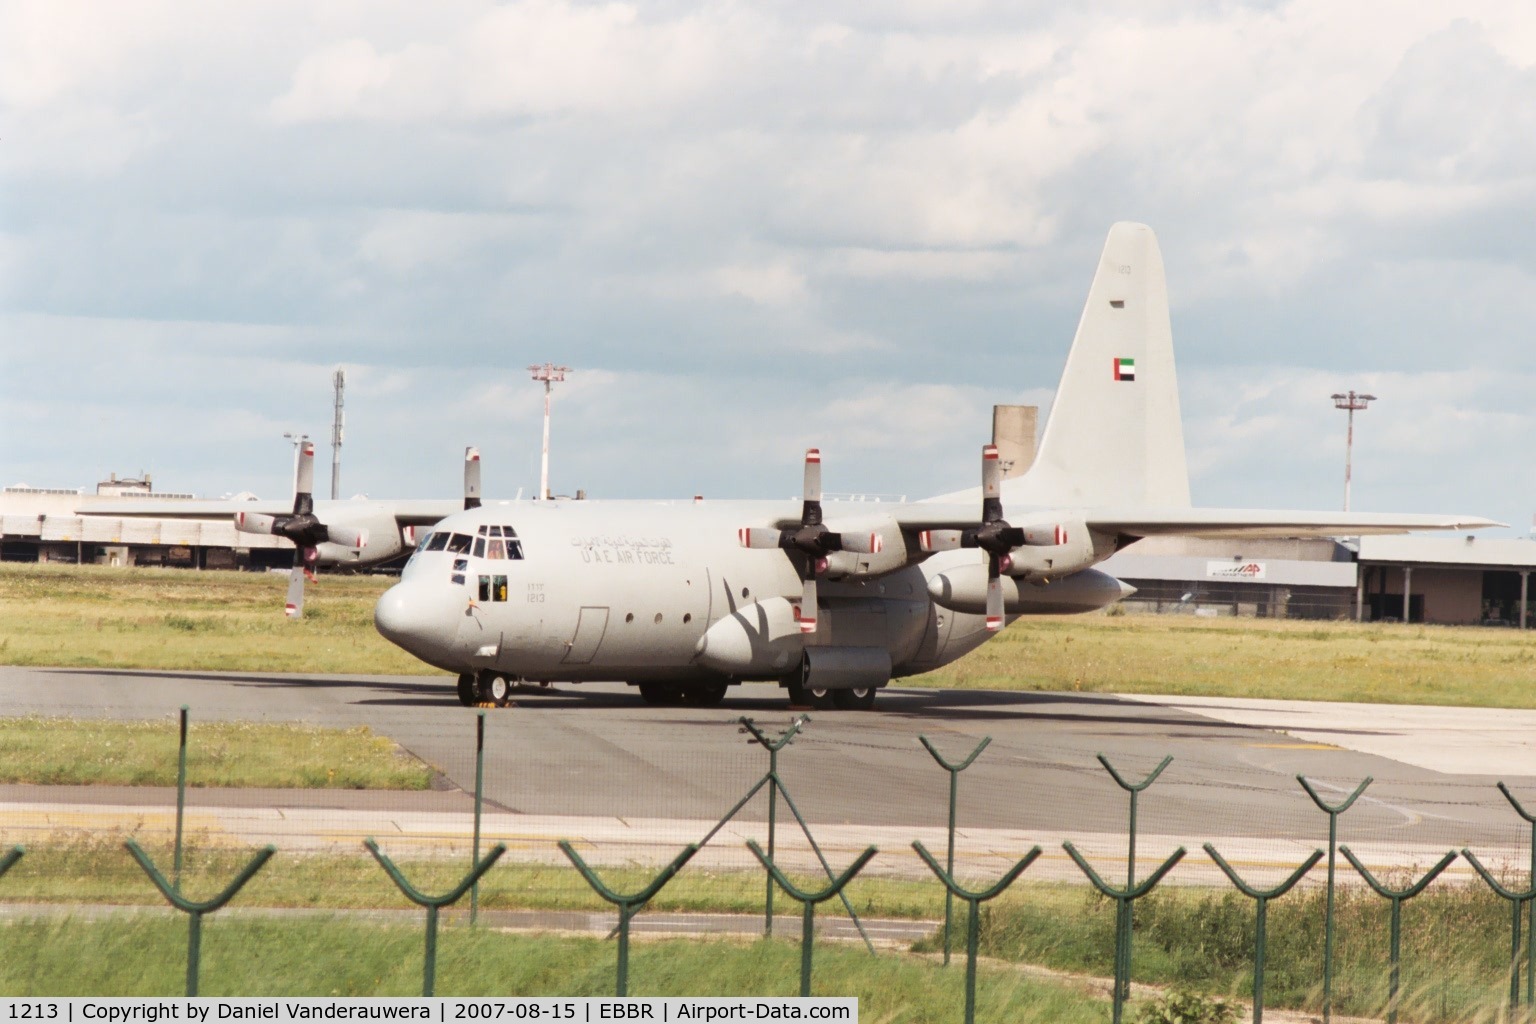 1213, 1981 Lockheed C-130H Hercules C/N 382-4879, visitor